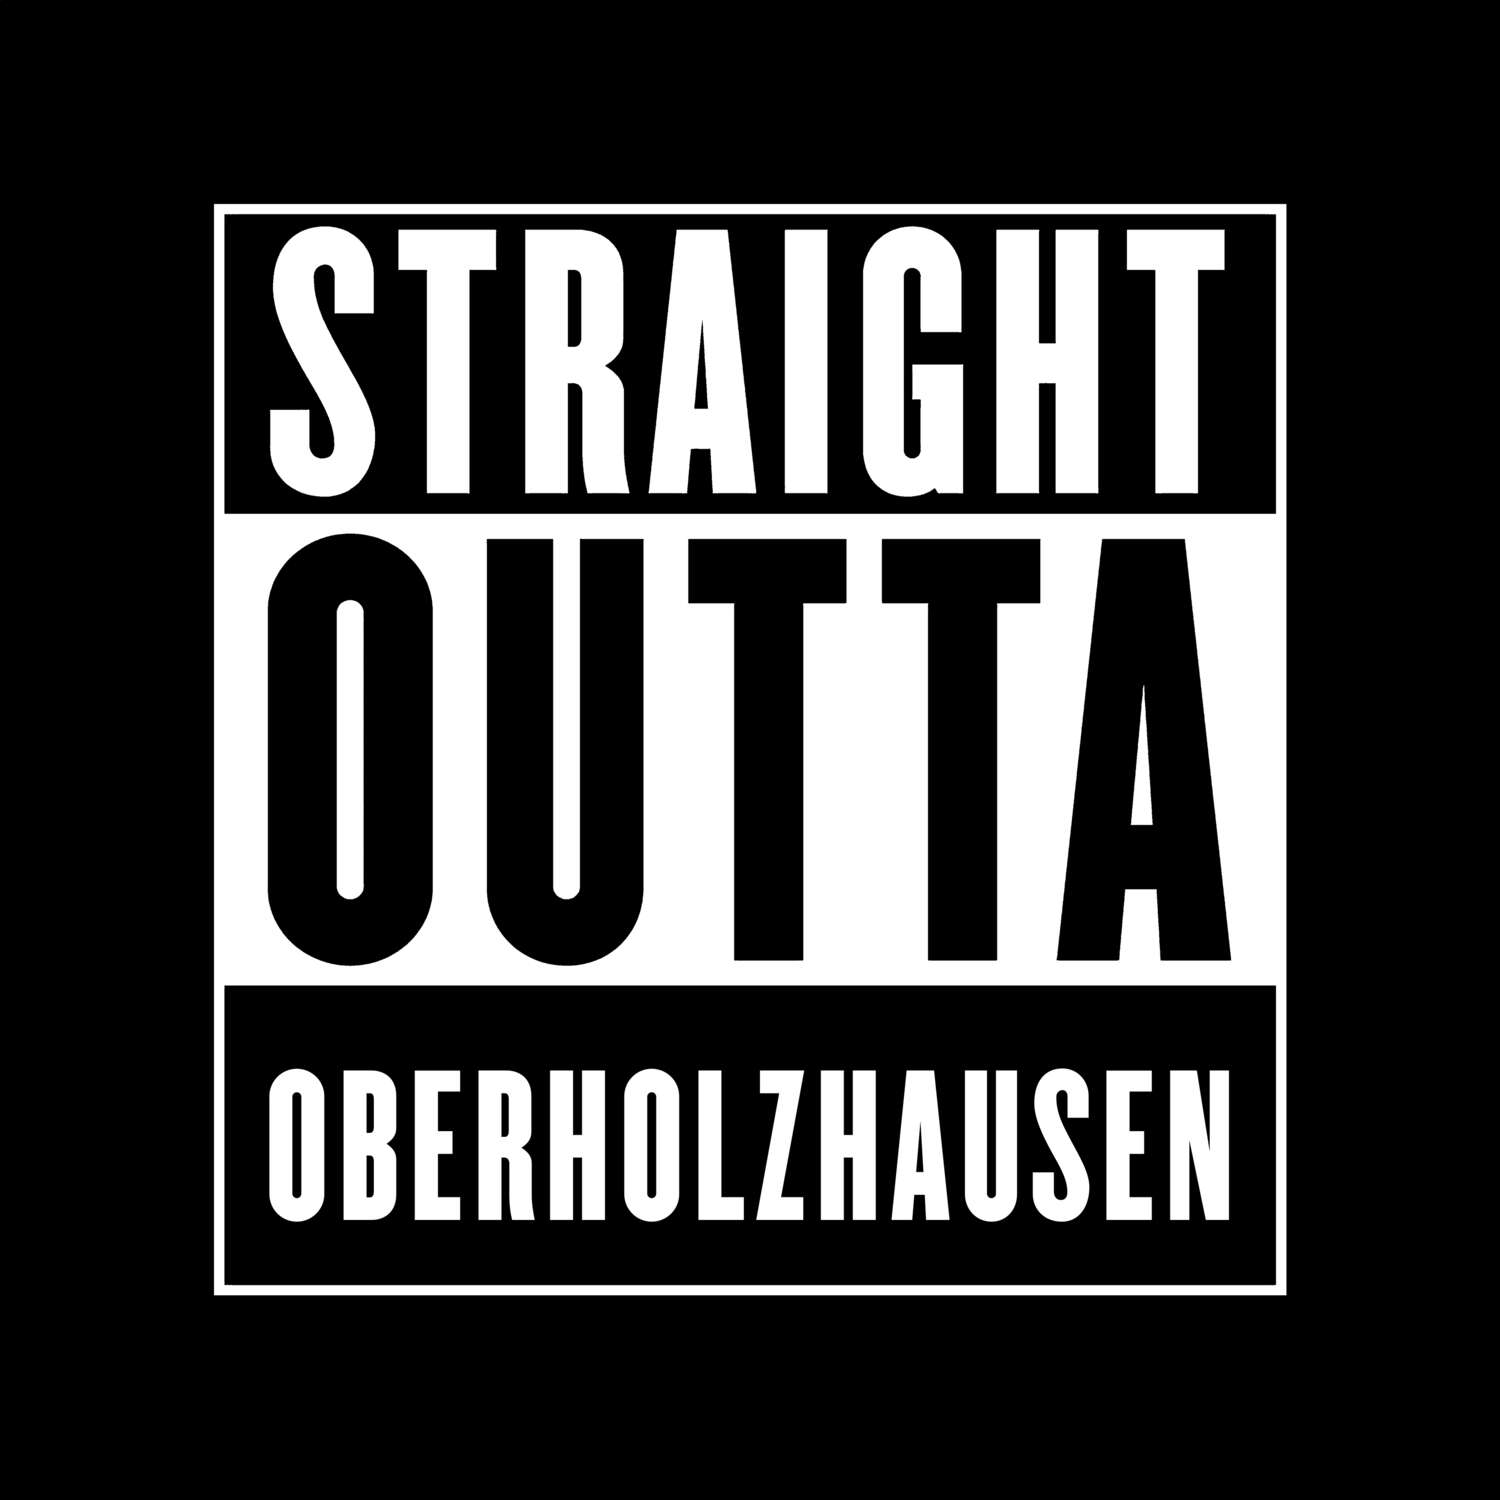 Oberholzhausen T-Shirt »Straight Outta«